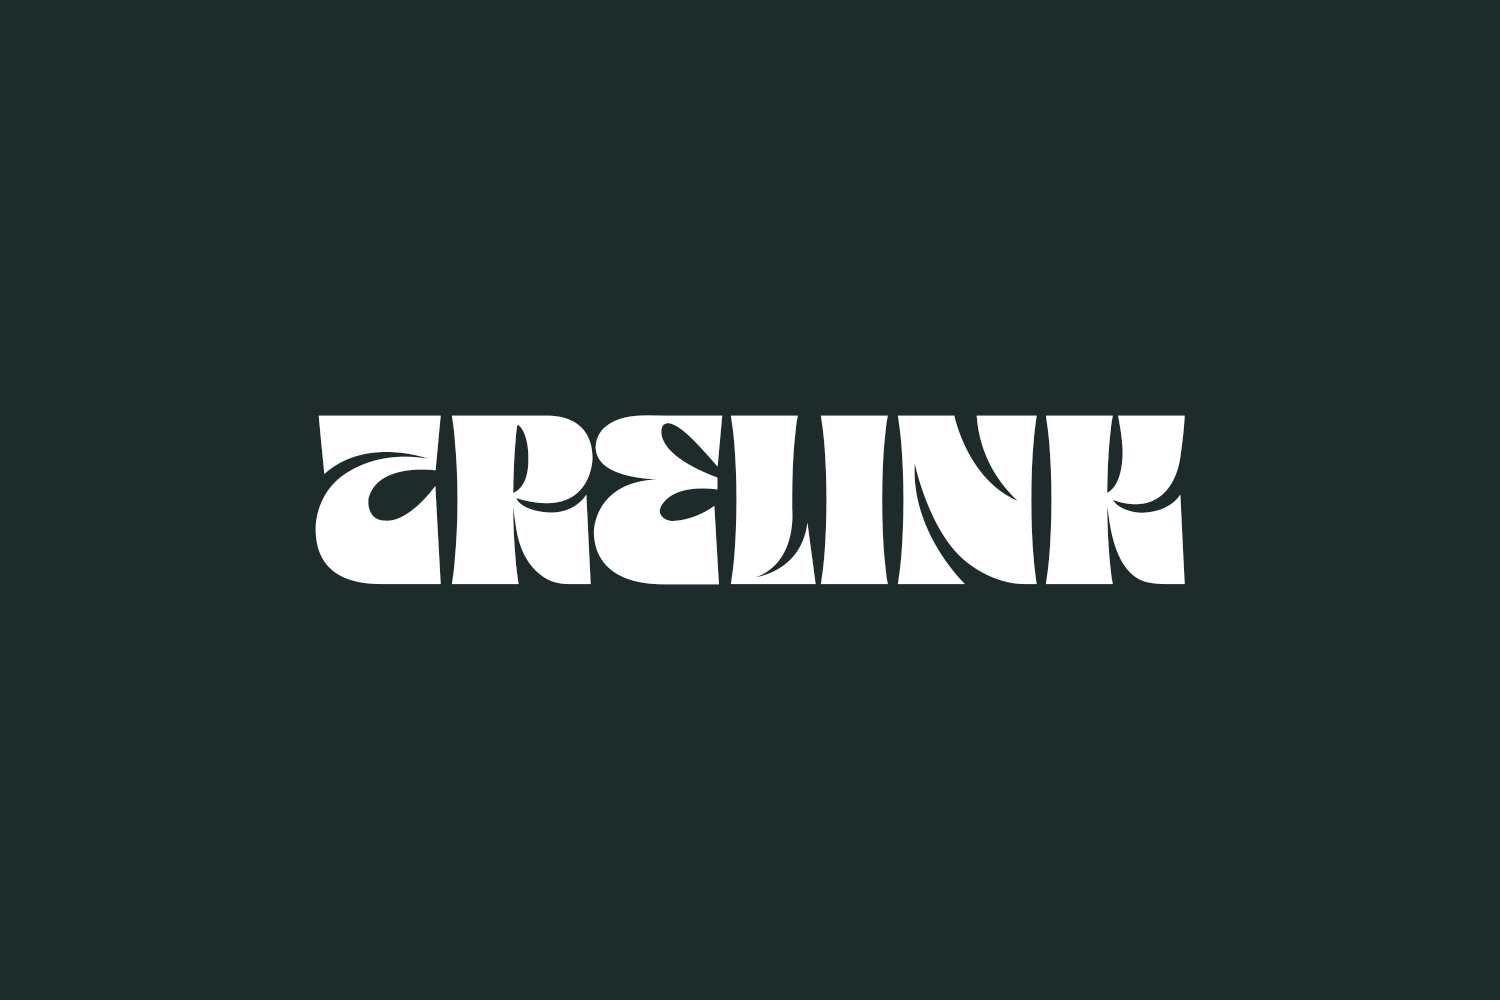 Trelink Free Font